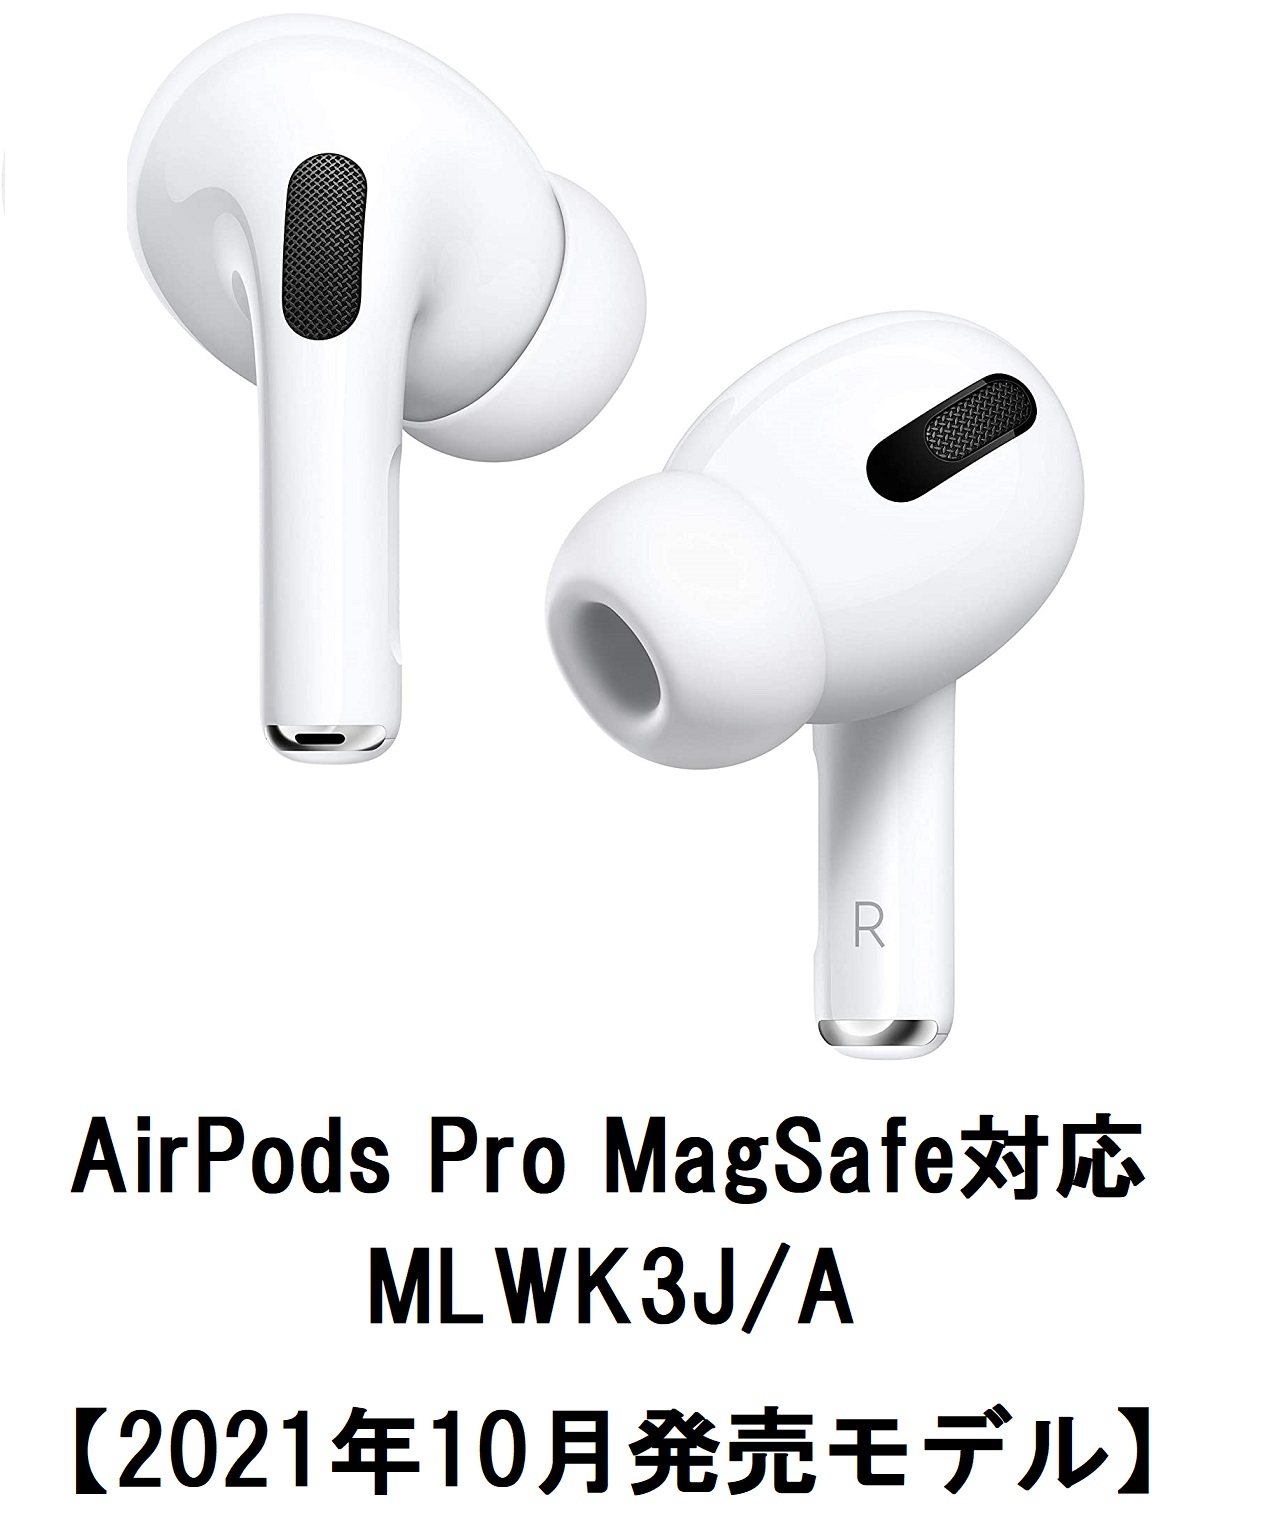 クリアランス卸し売り MagSafe Pro AirPods 充電ケース 本体 正規品 MLWK3JA イヤフォン